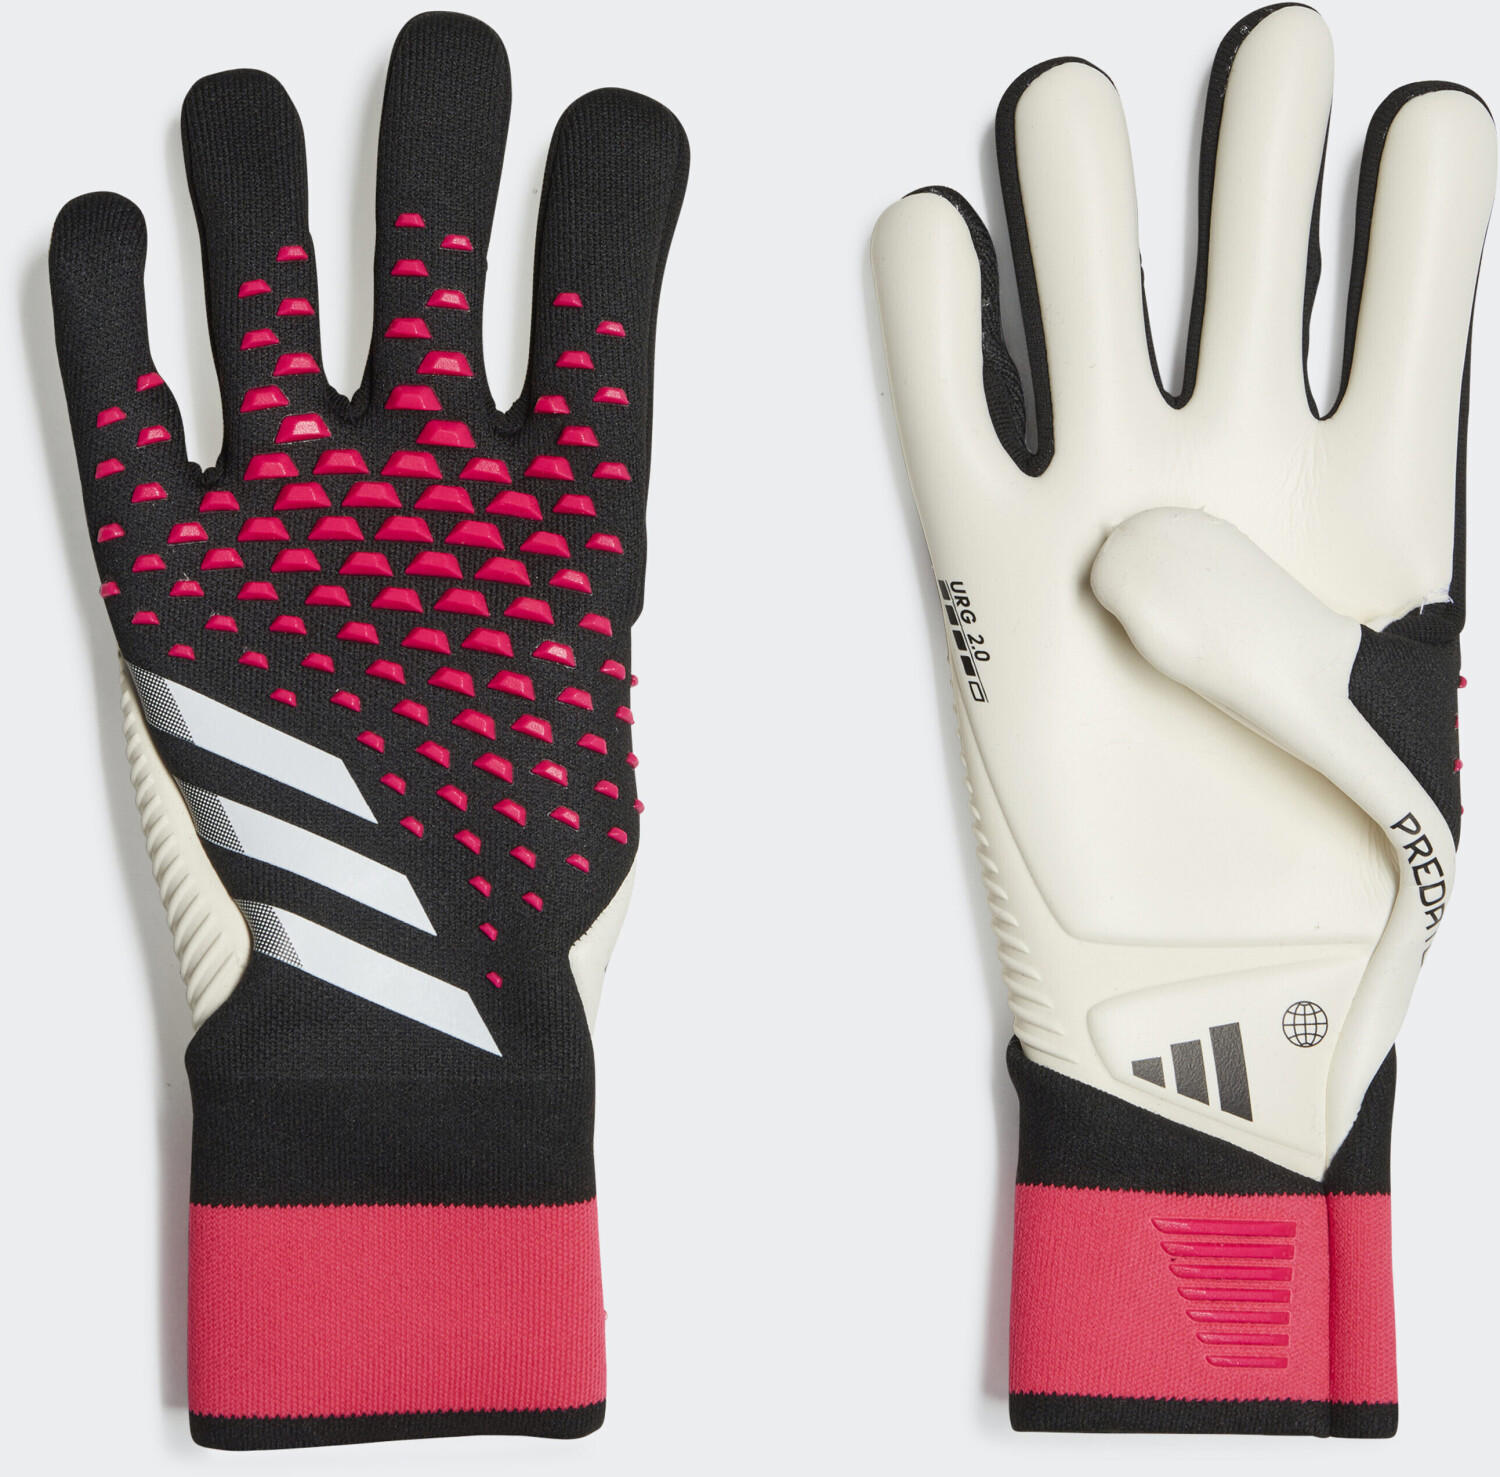 Adidas Predator Pro Own Your Football Black White Pink